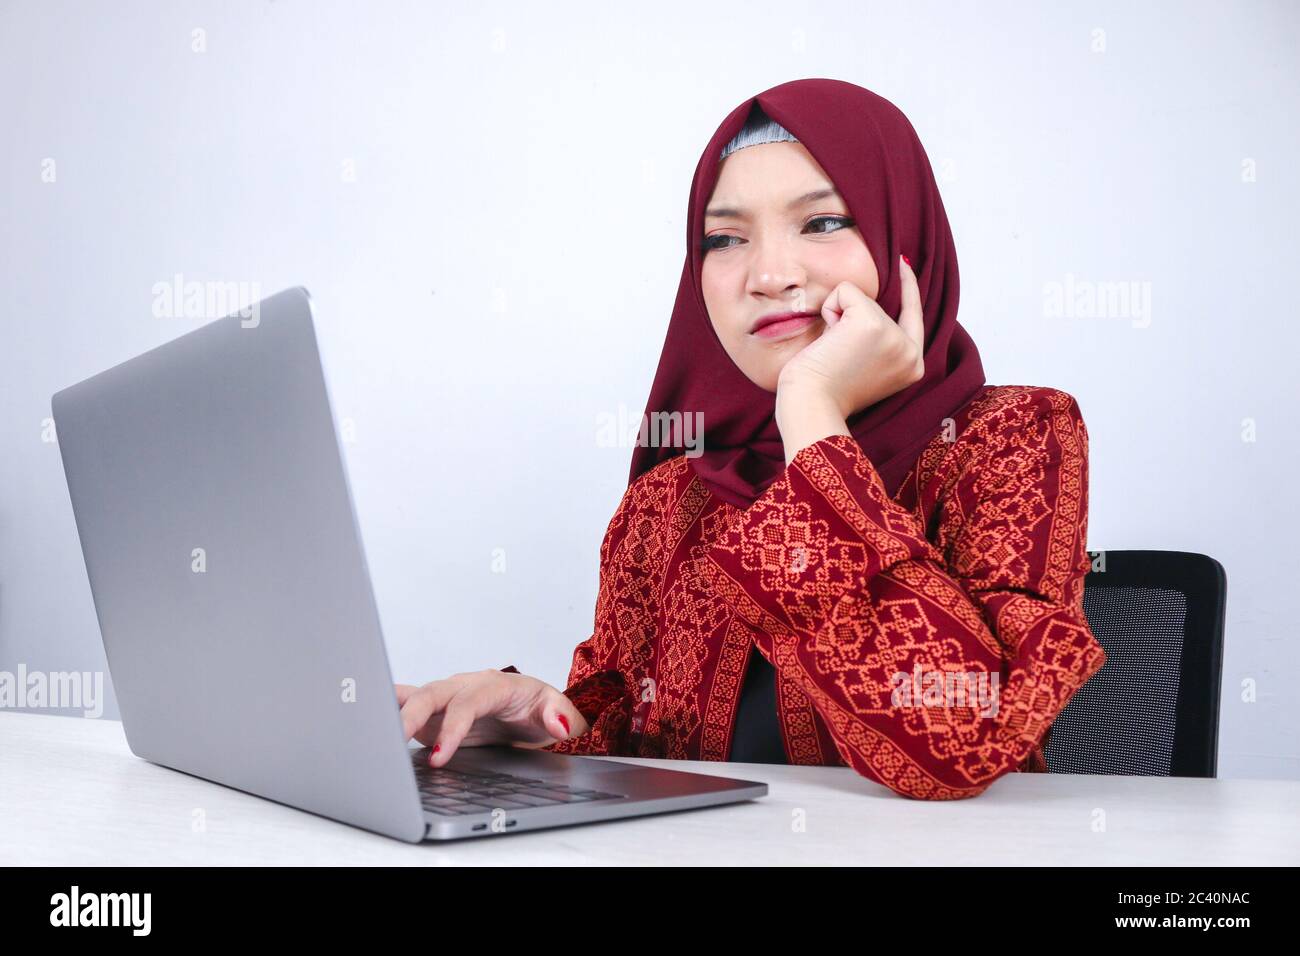 Junge asiatische Islam Frau ist ernst Blick mit denkenden Geste Hand auf Gesicht auf der Vorderseite des Laptops. Stockfoto